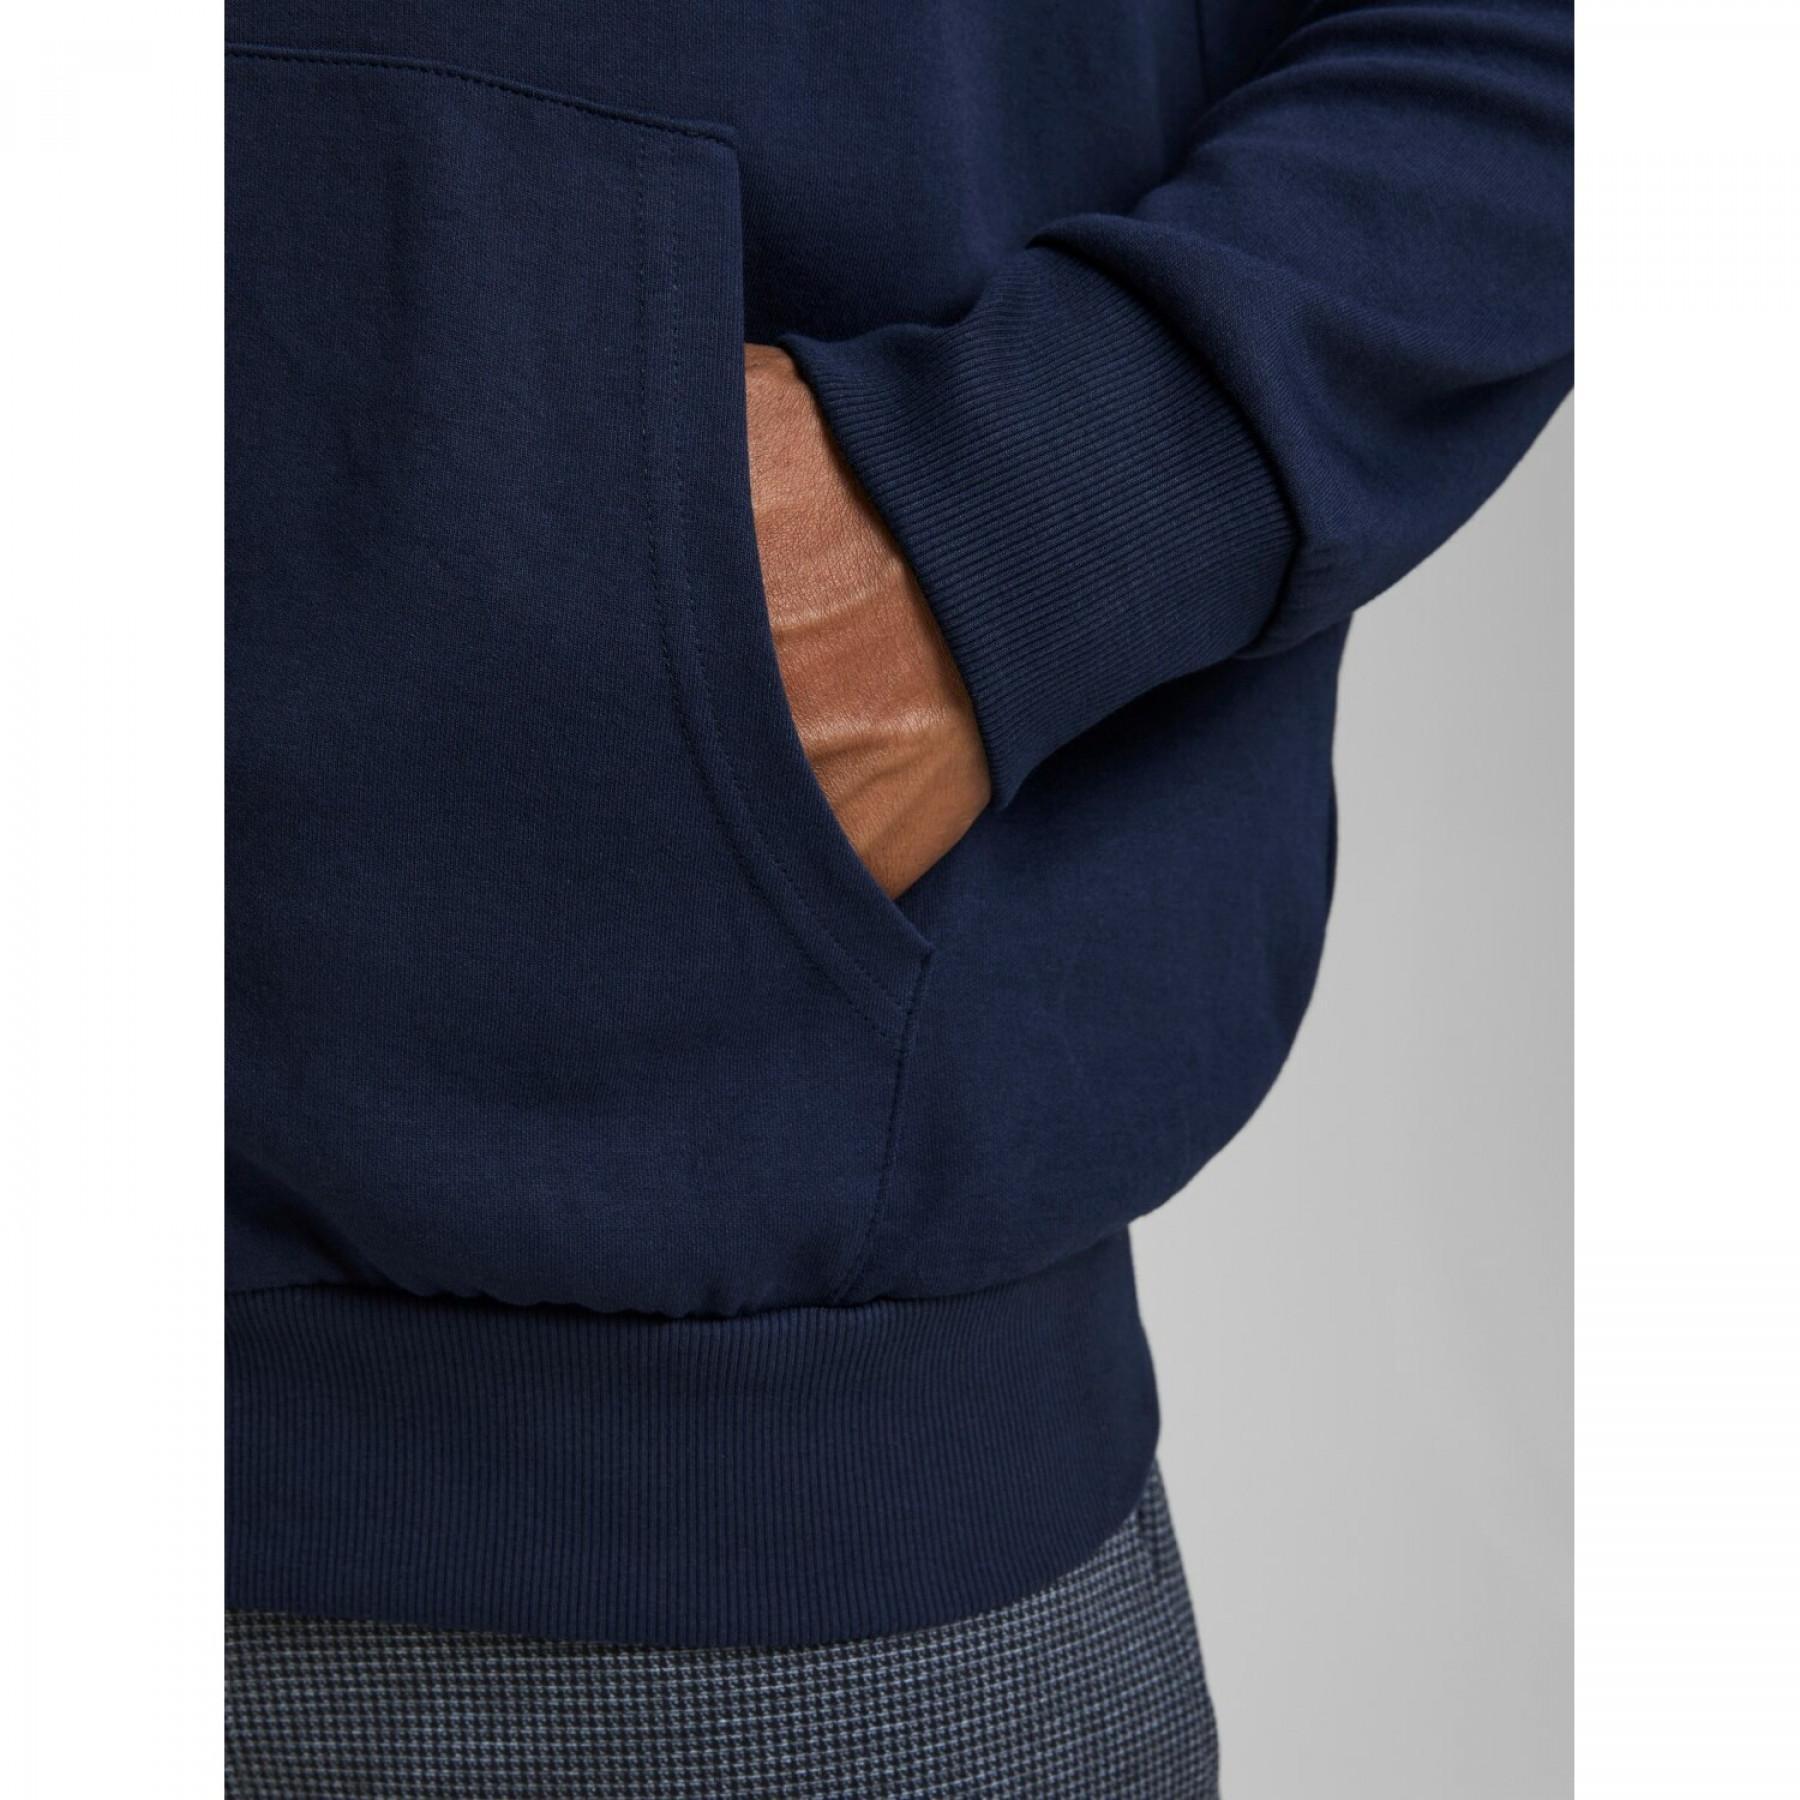 Sweatshirt zippé à capuche grande taille Jack & Jones Basic Bleu